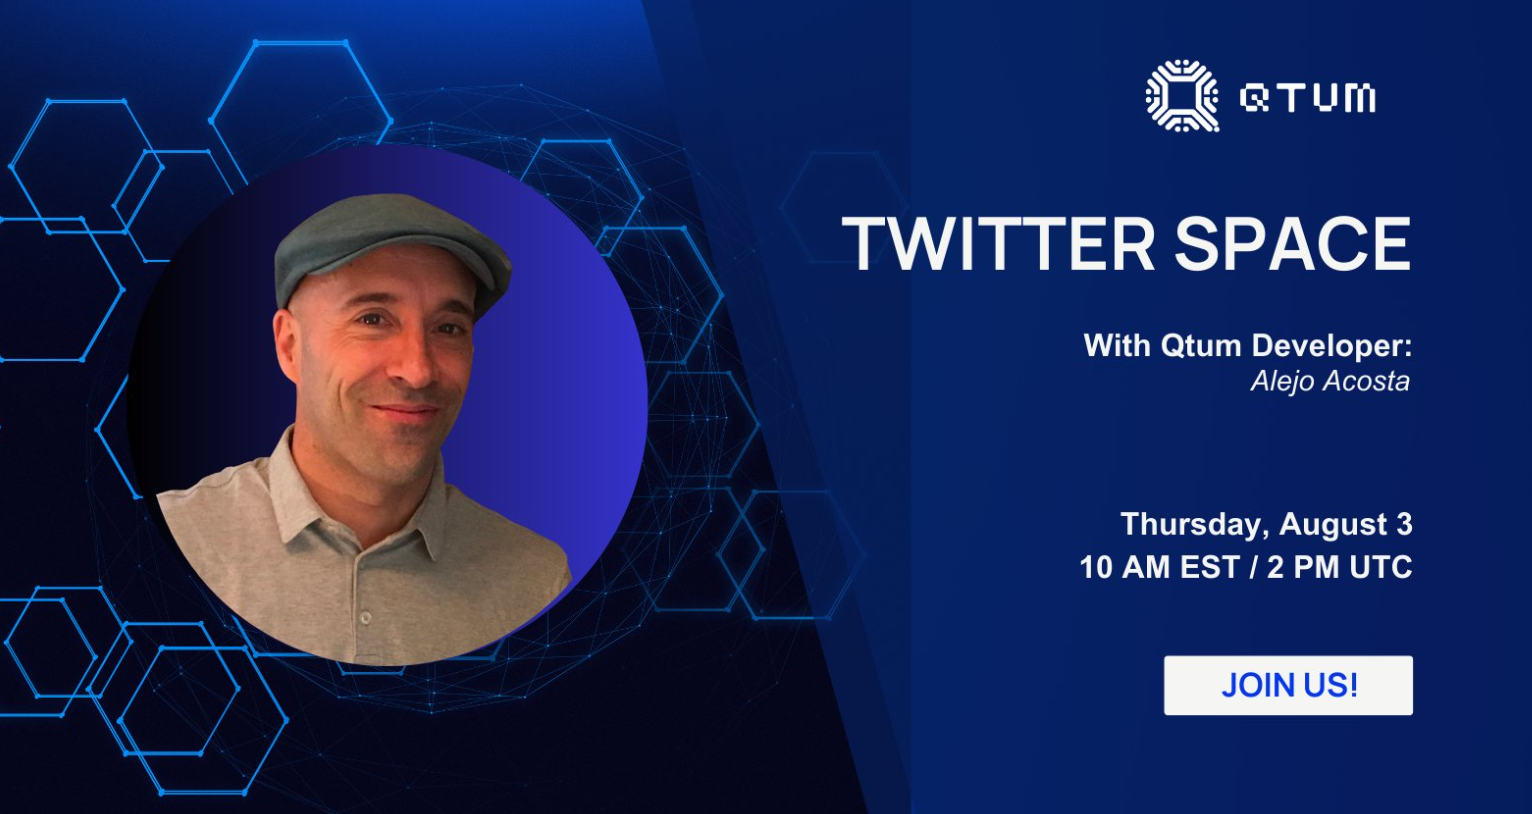 Qtum geliştiricisi Alejo Acosta ile #TwitterSpace konuşmasına katılın!